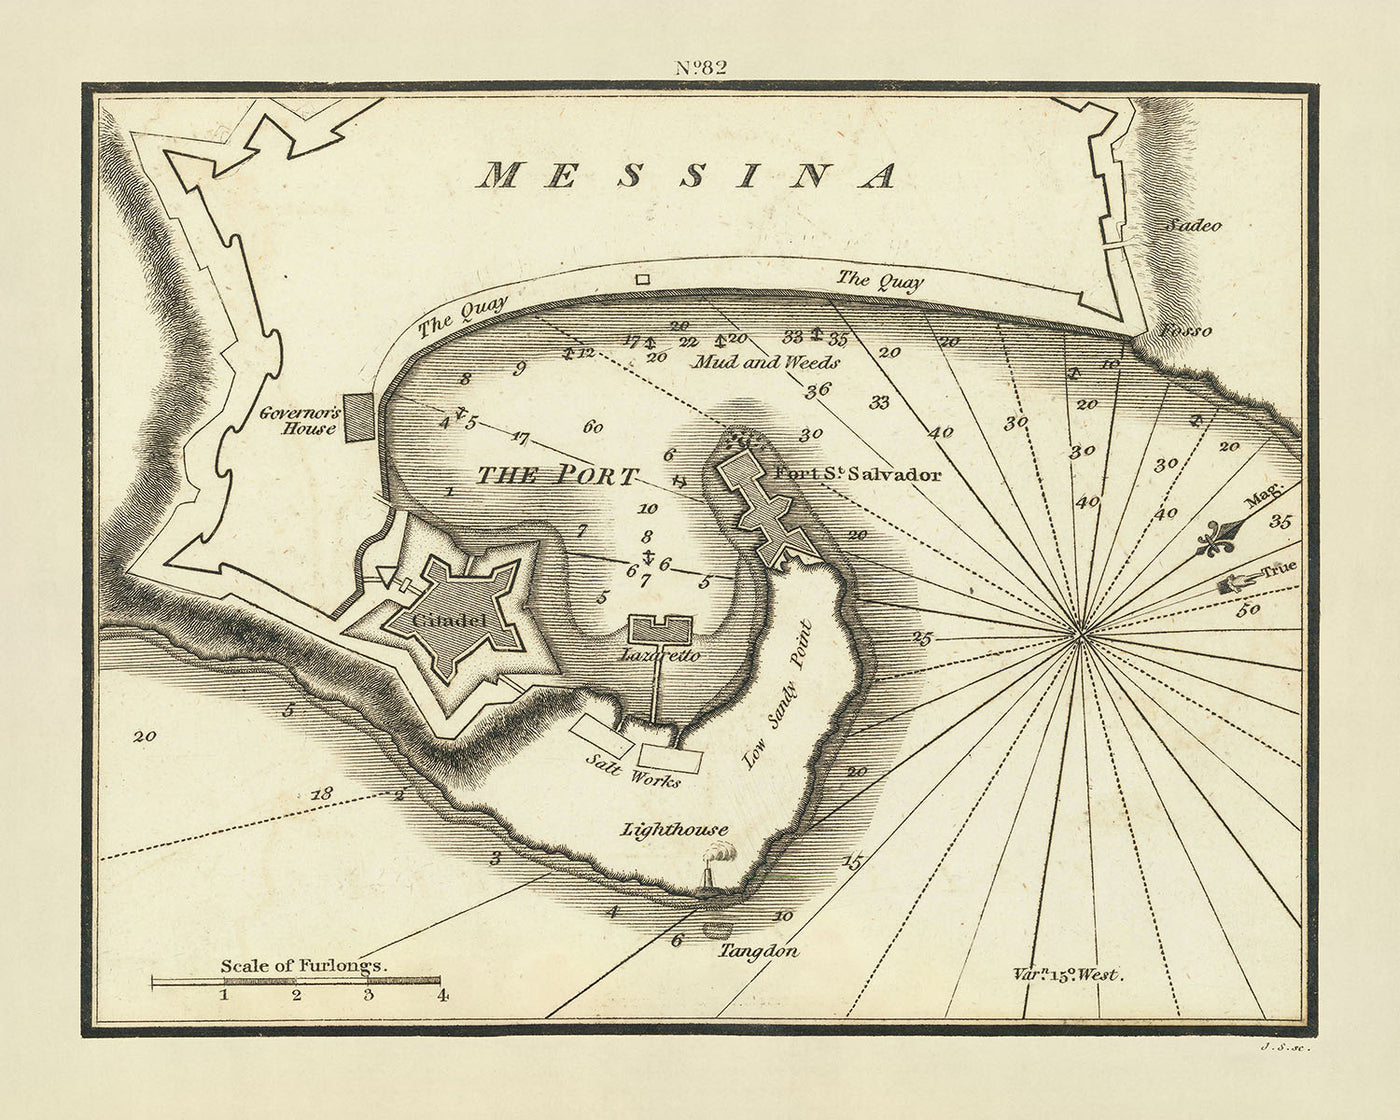 Alte Messina-Seekarte von Heather, 1802: Zitadelle, Fort St. Salvador, Salinen